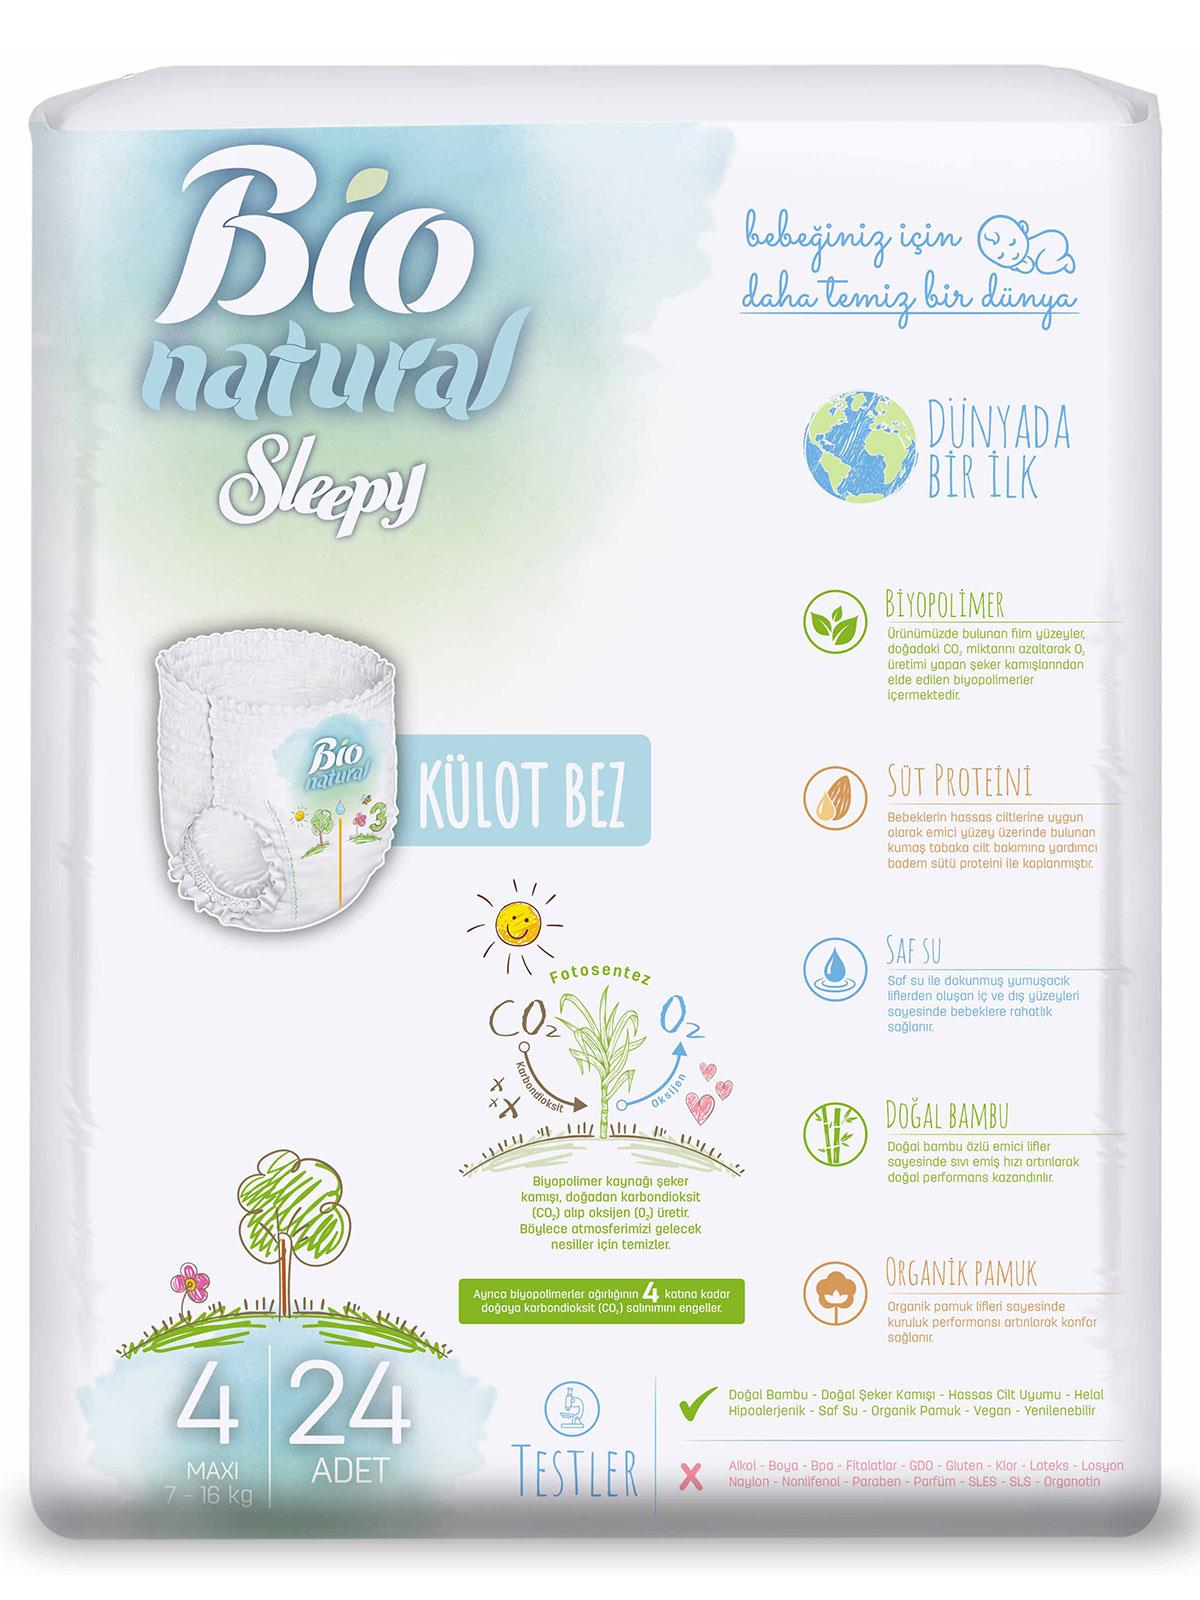 Sleepy Bio Natural Külot Bez 4 Numara Maxi 7-16 kg 24 Adet